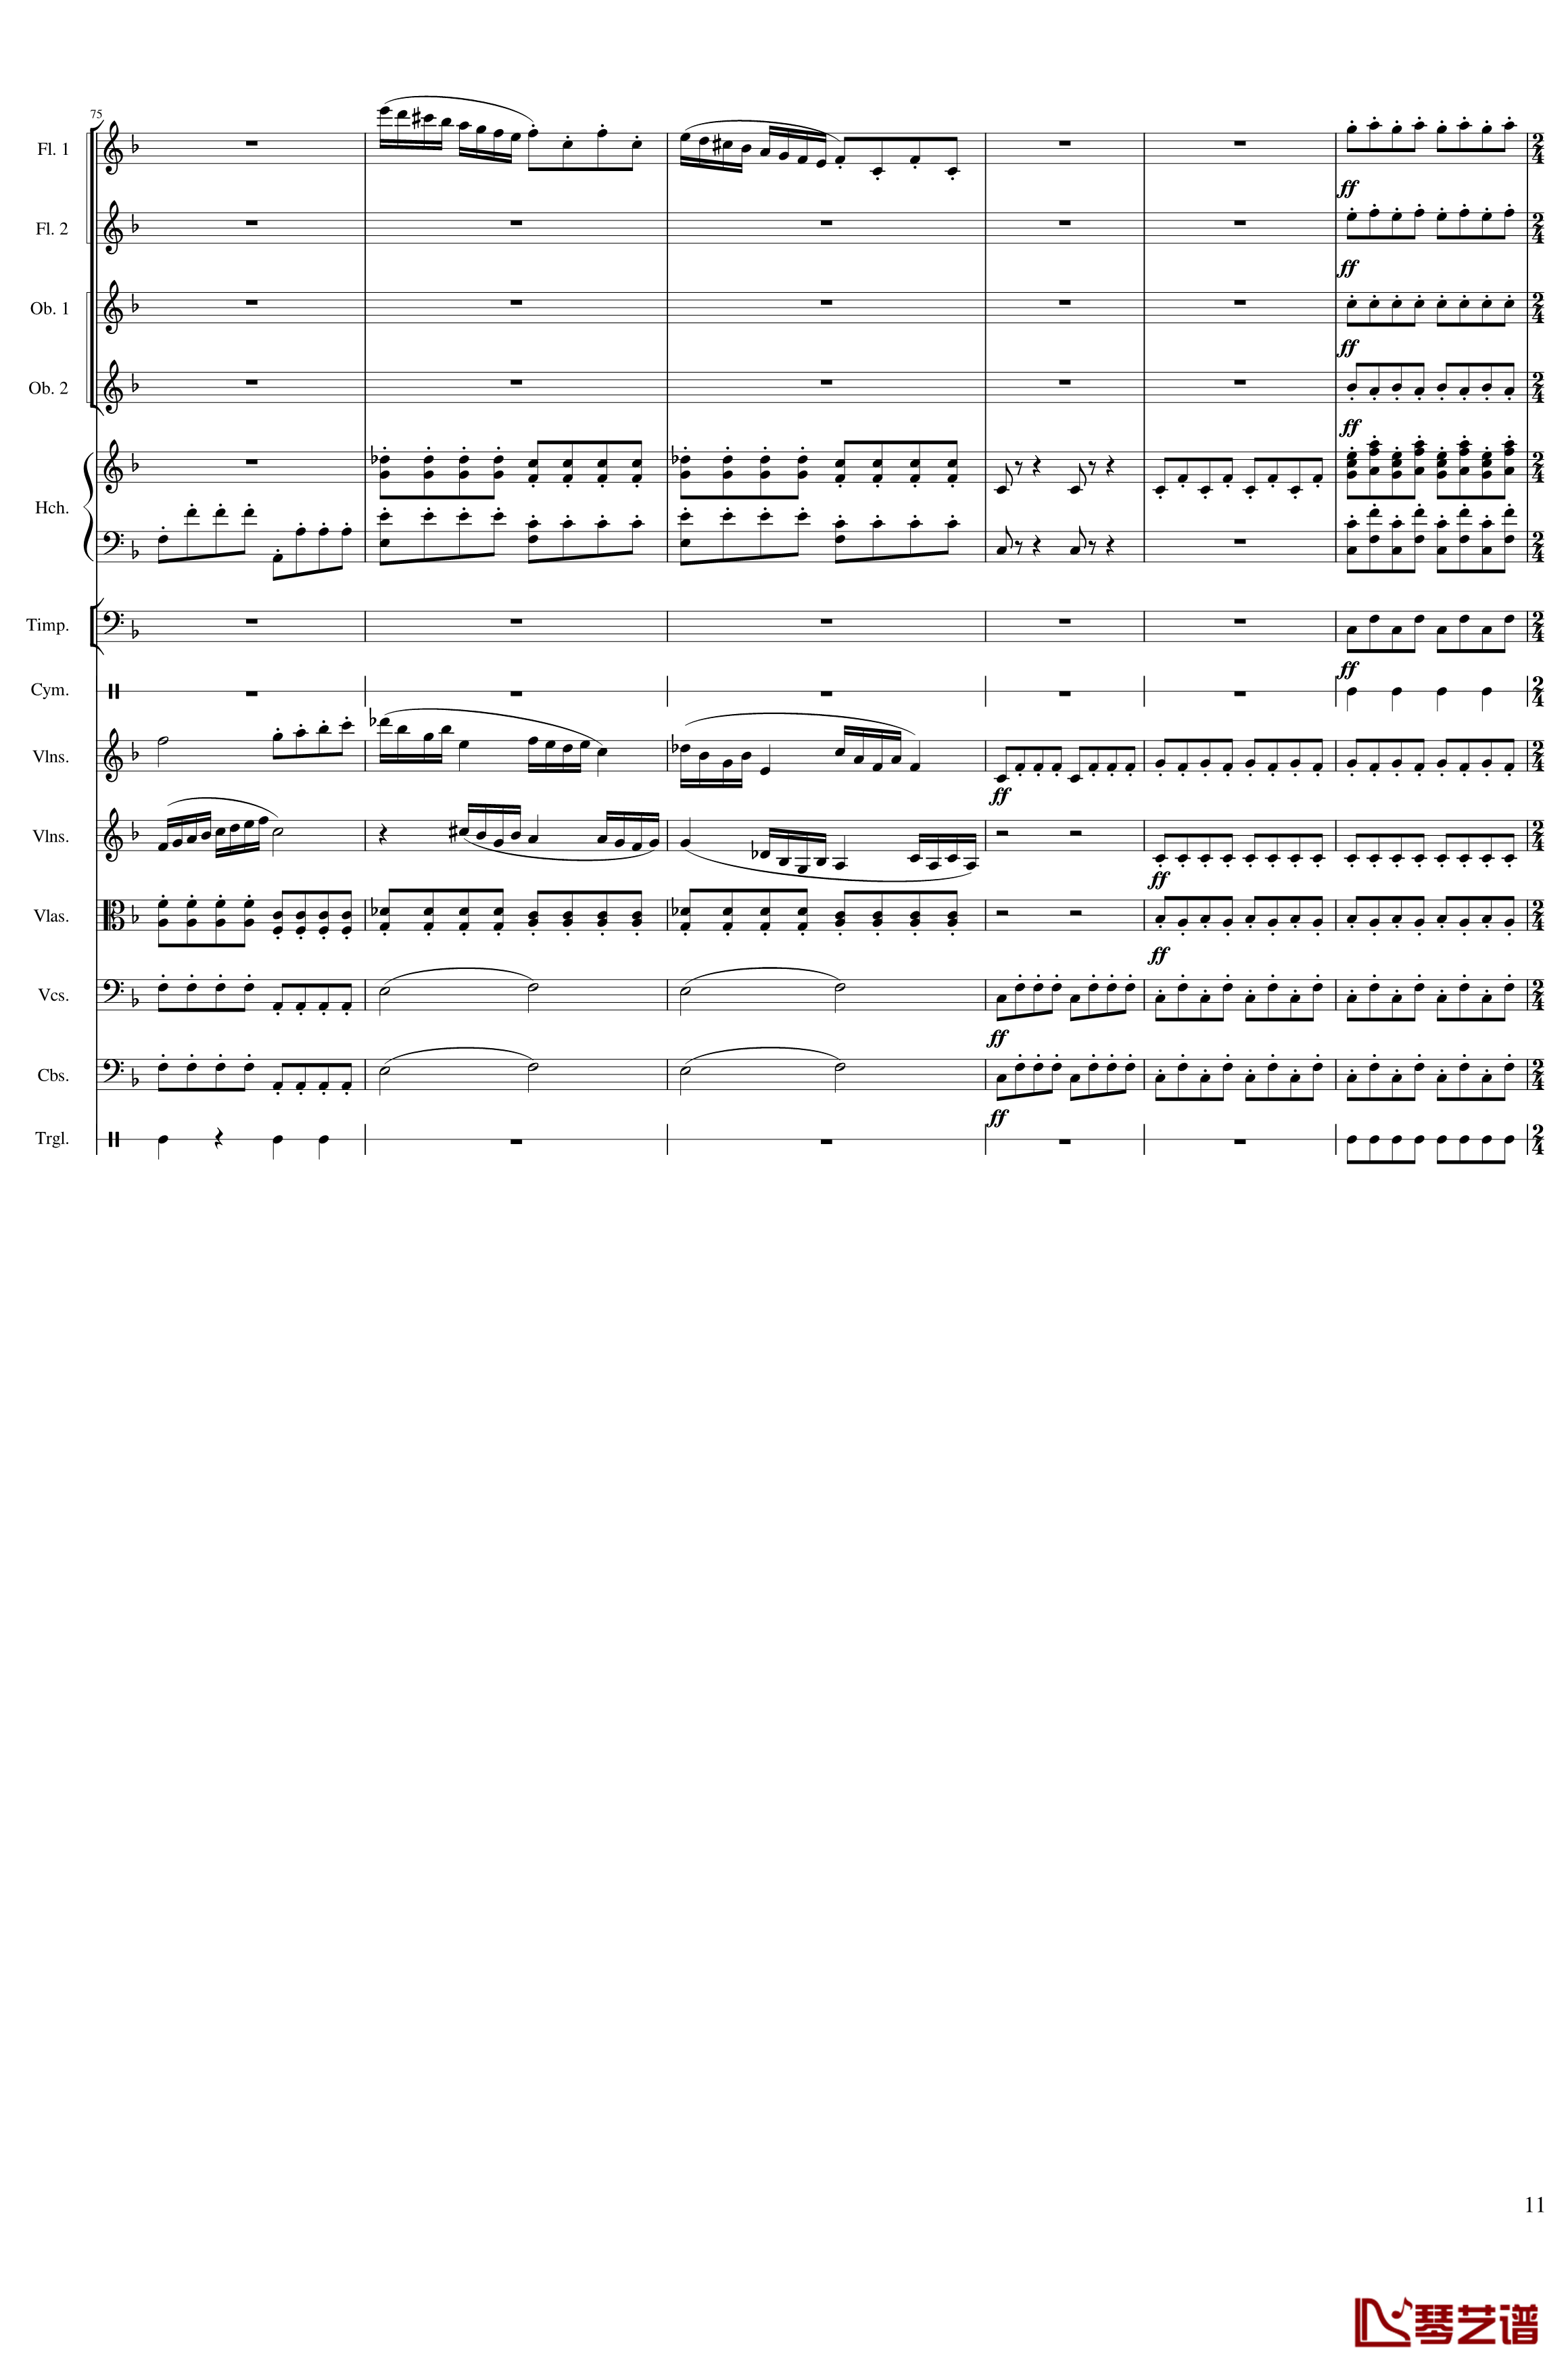 春节序曲钢琴谱-作品121-一个球11